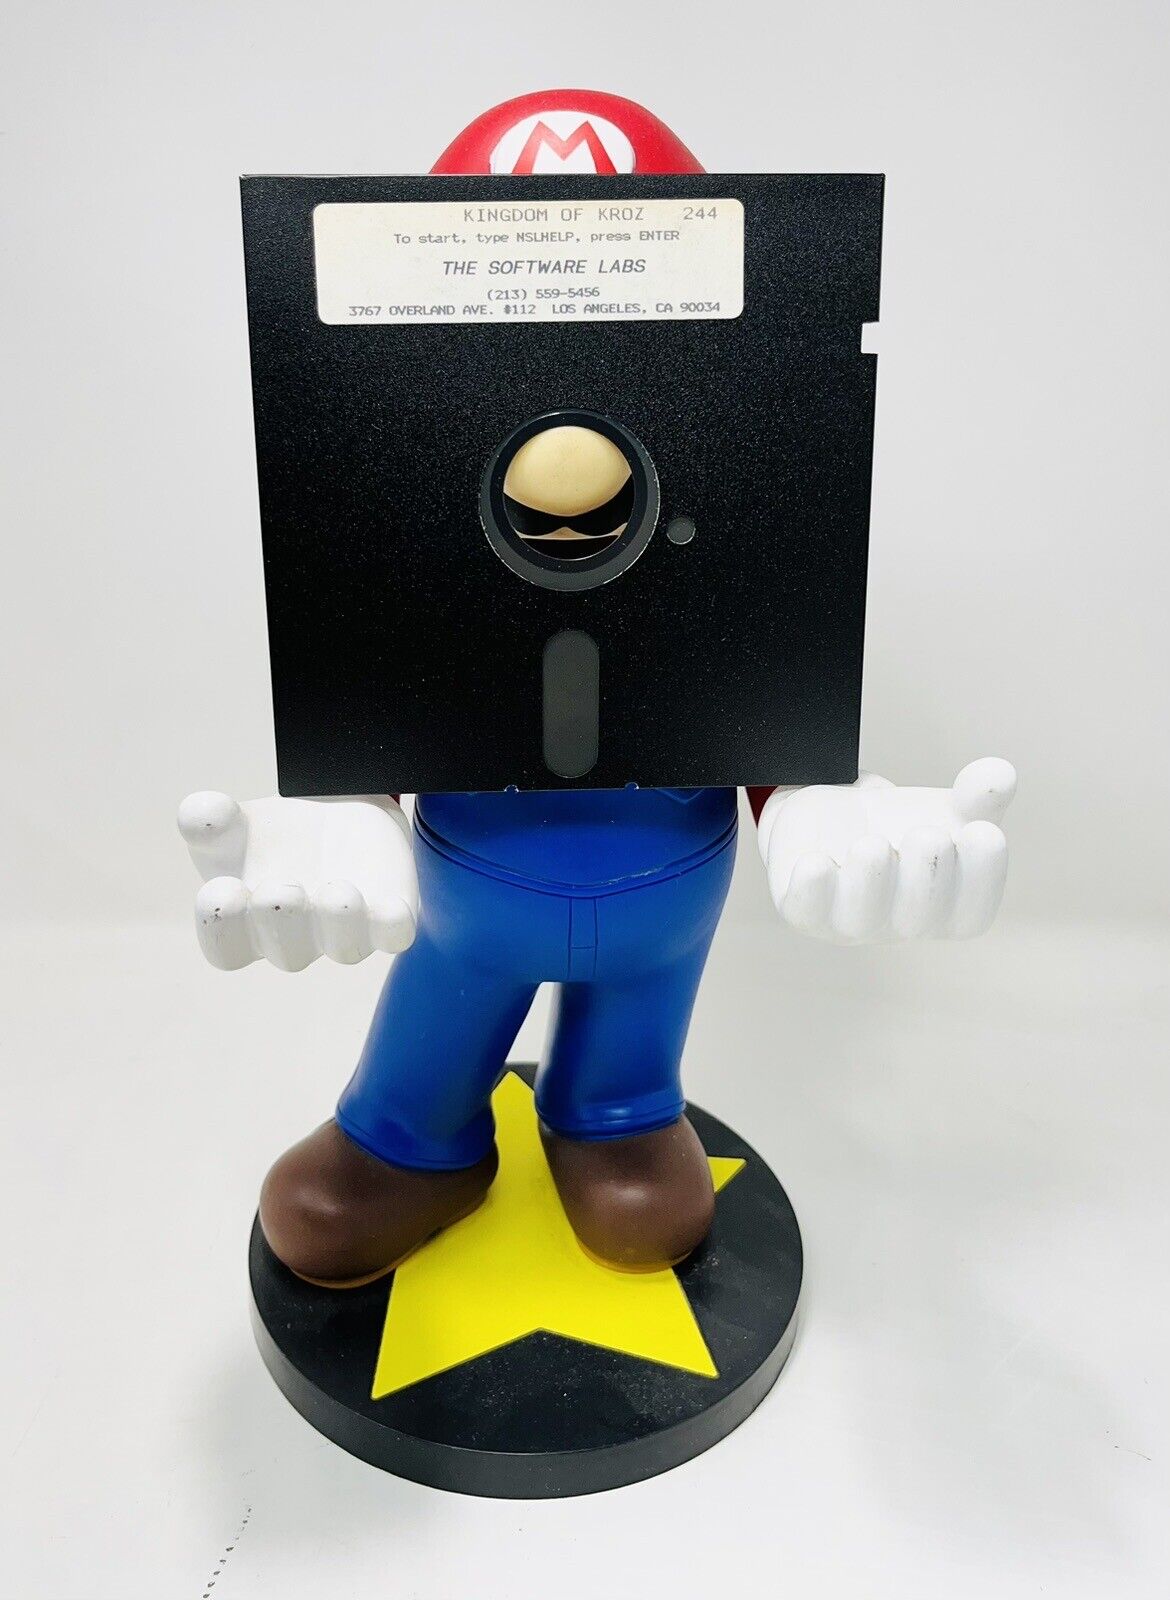 Original IBM Kingdom Of KROZ Floppy Disk 5.25